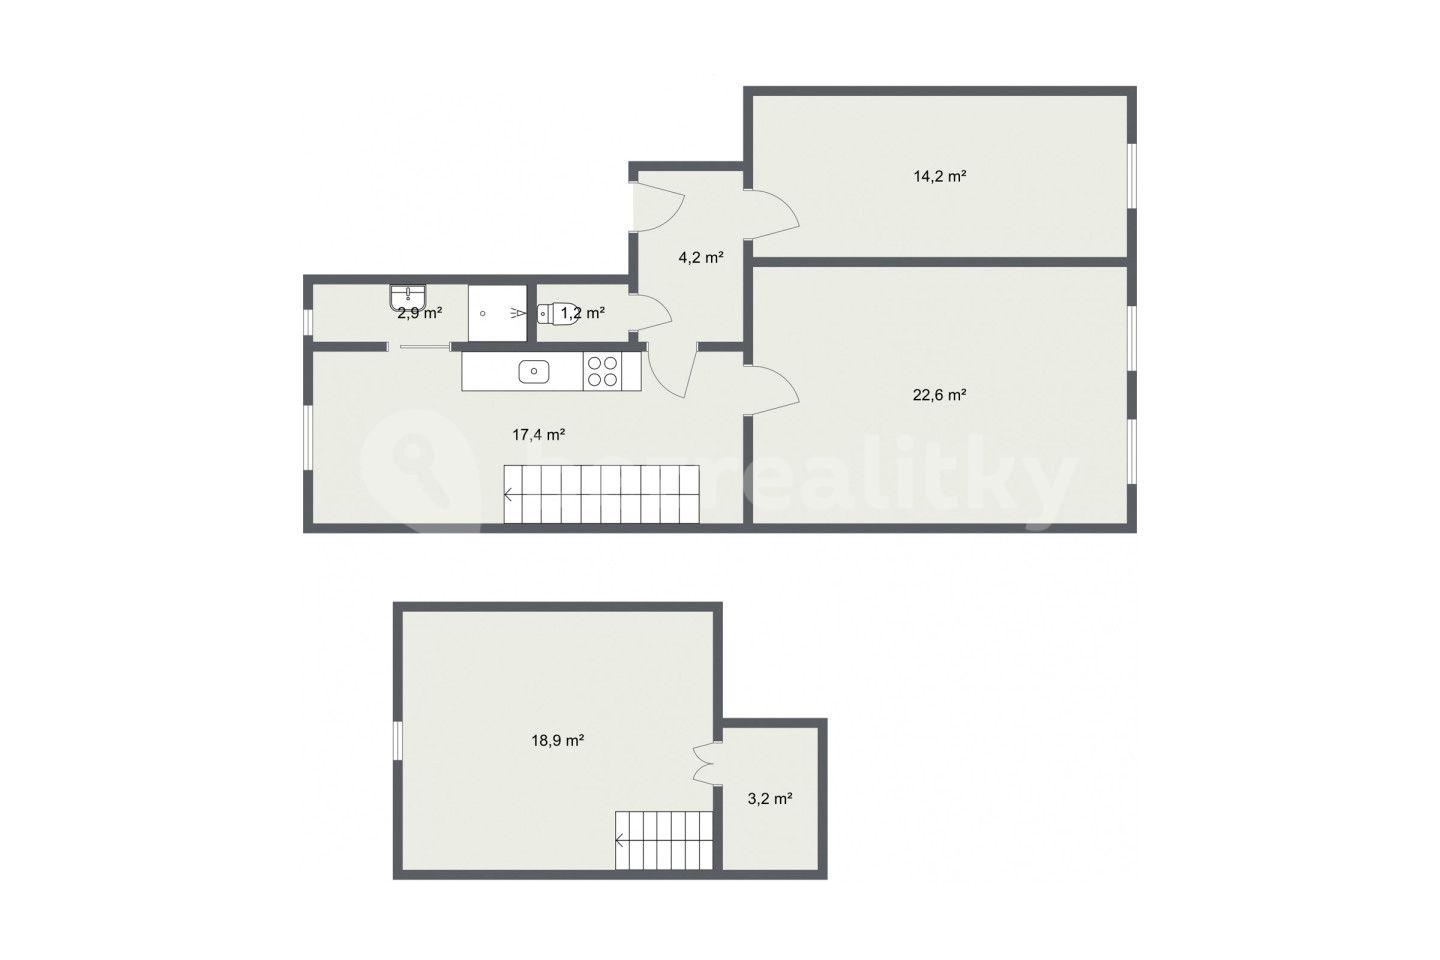 3 bedroom flat for sale, 84 m², Svahová, Karlovy Vary, Karlovarský Region